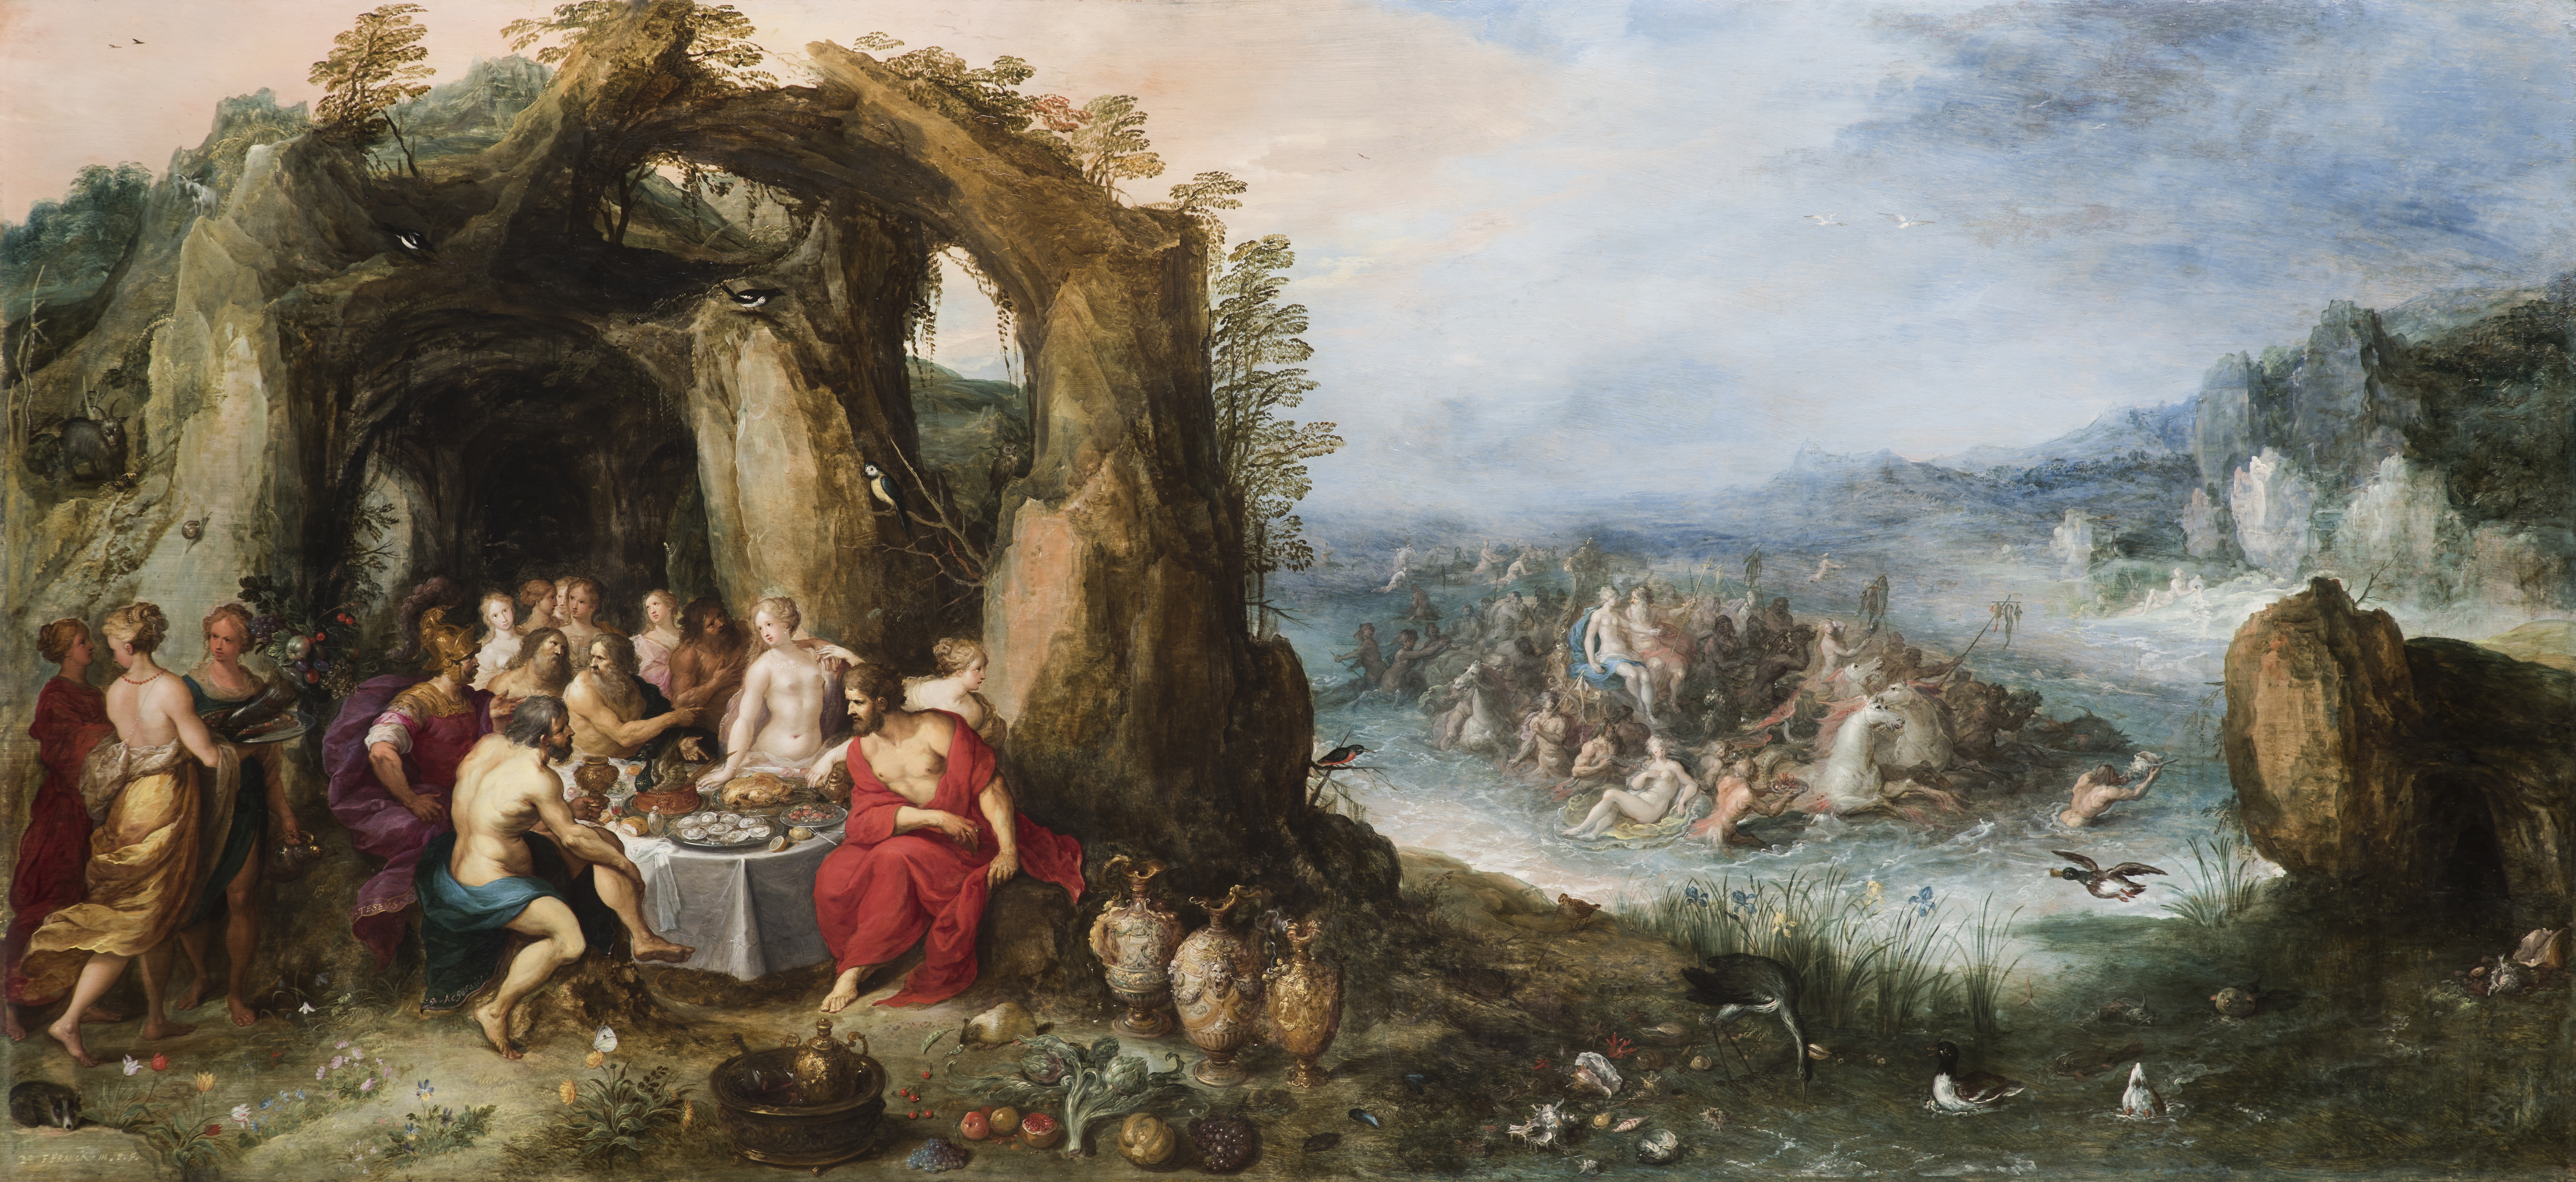 feast-of-the-gods-frans-francken-oil-on-panel-727-x-1575-cm